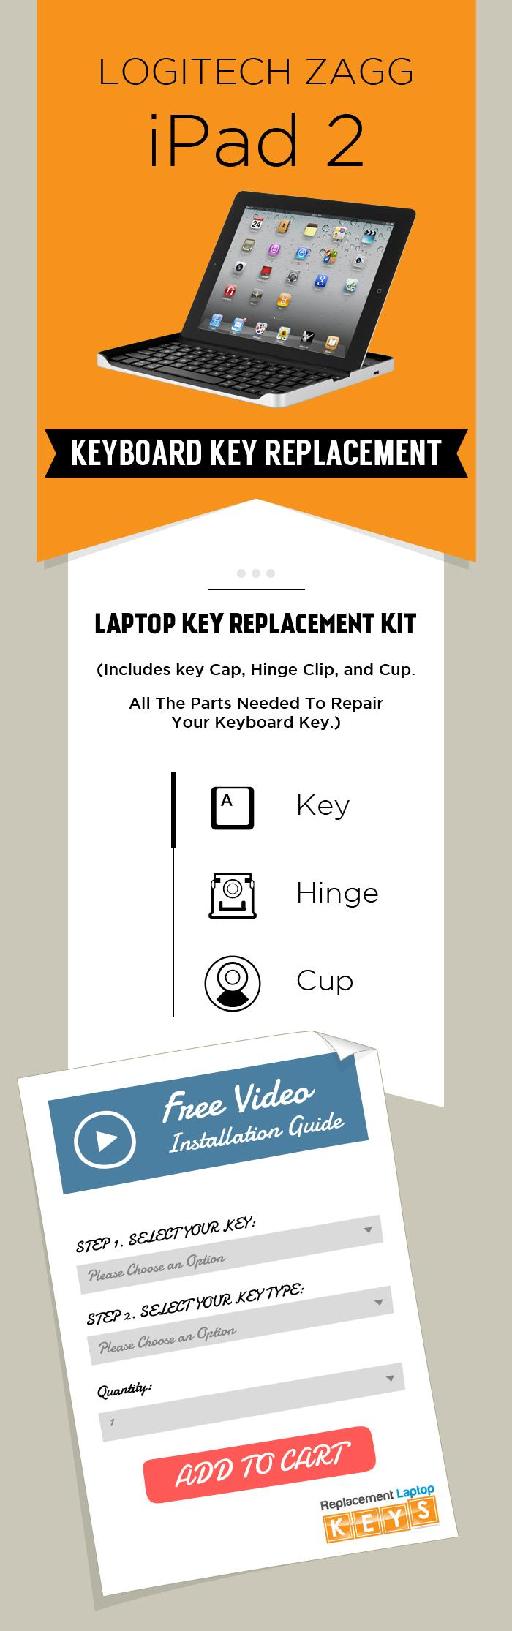 Logitech Zagg iPad 2 Keyboard Key Replacement